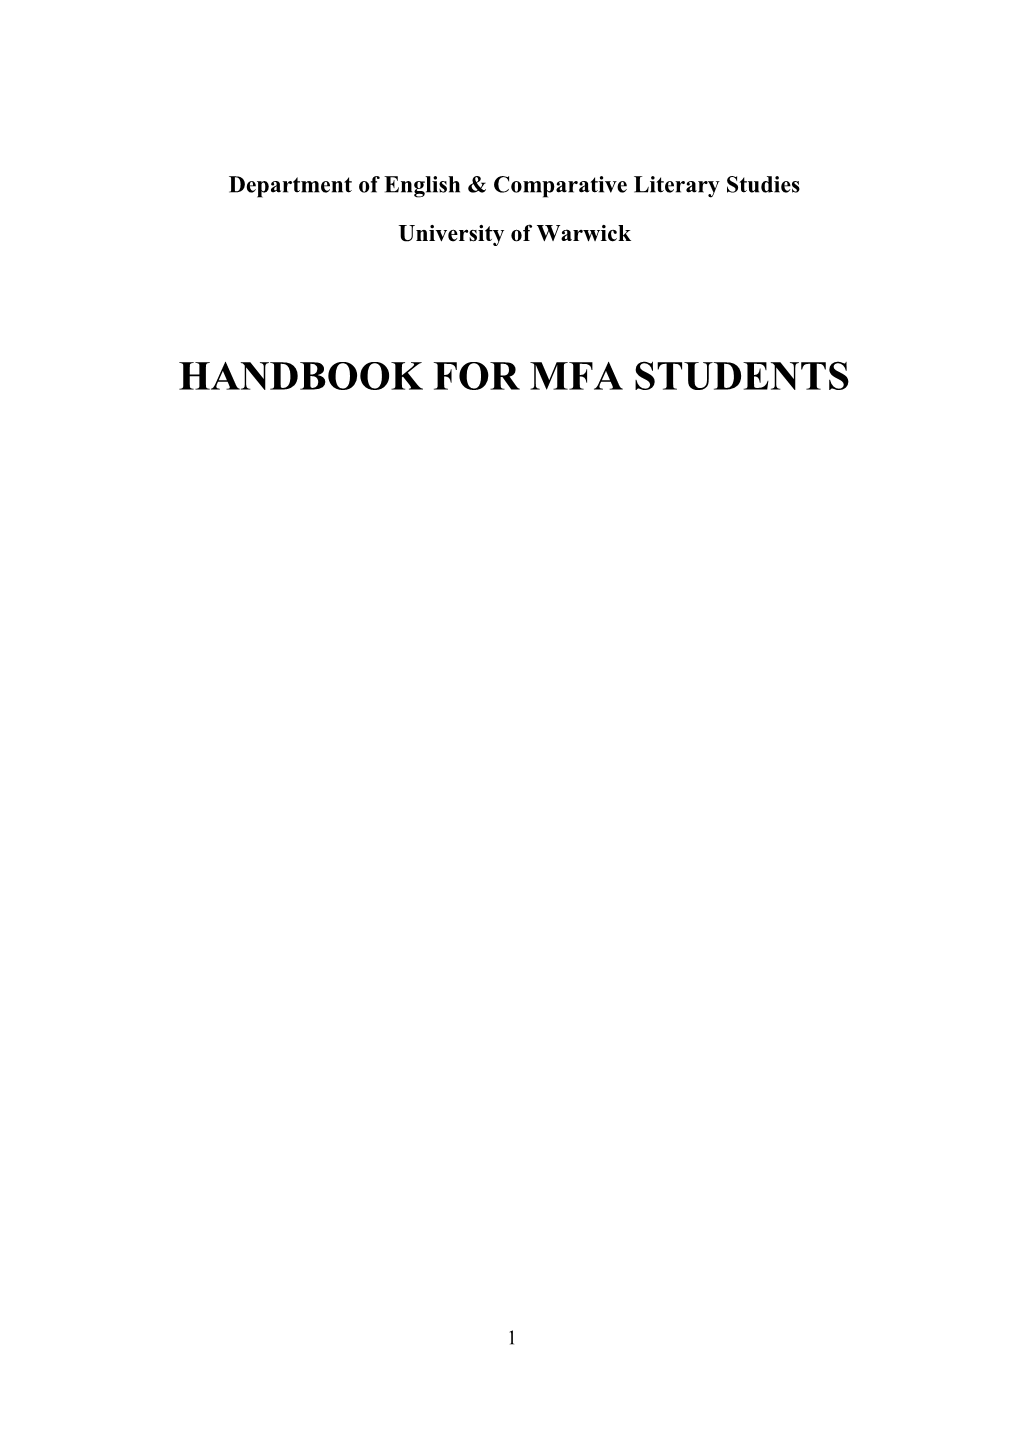 Handbook for Mfa Students